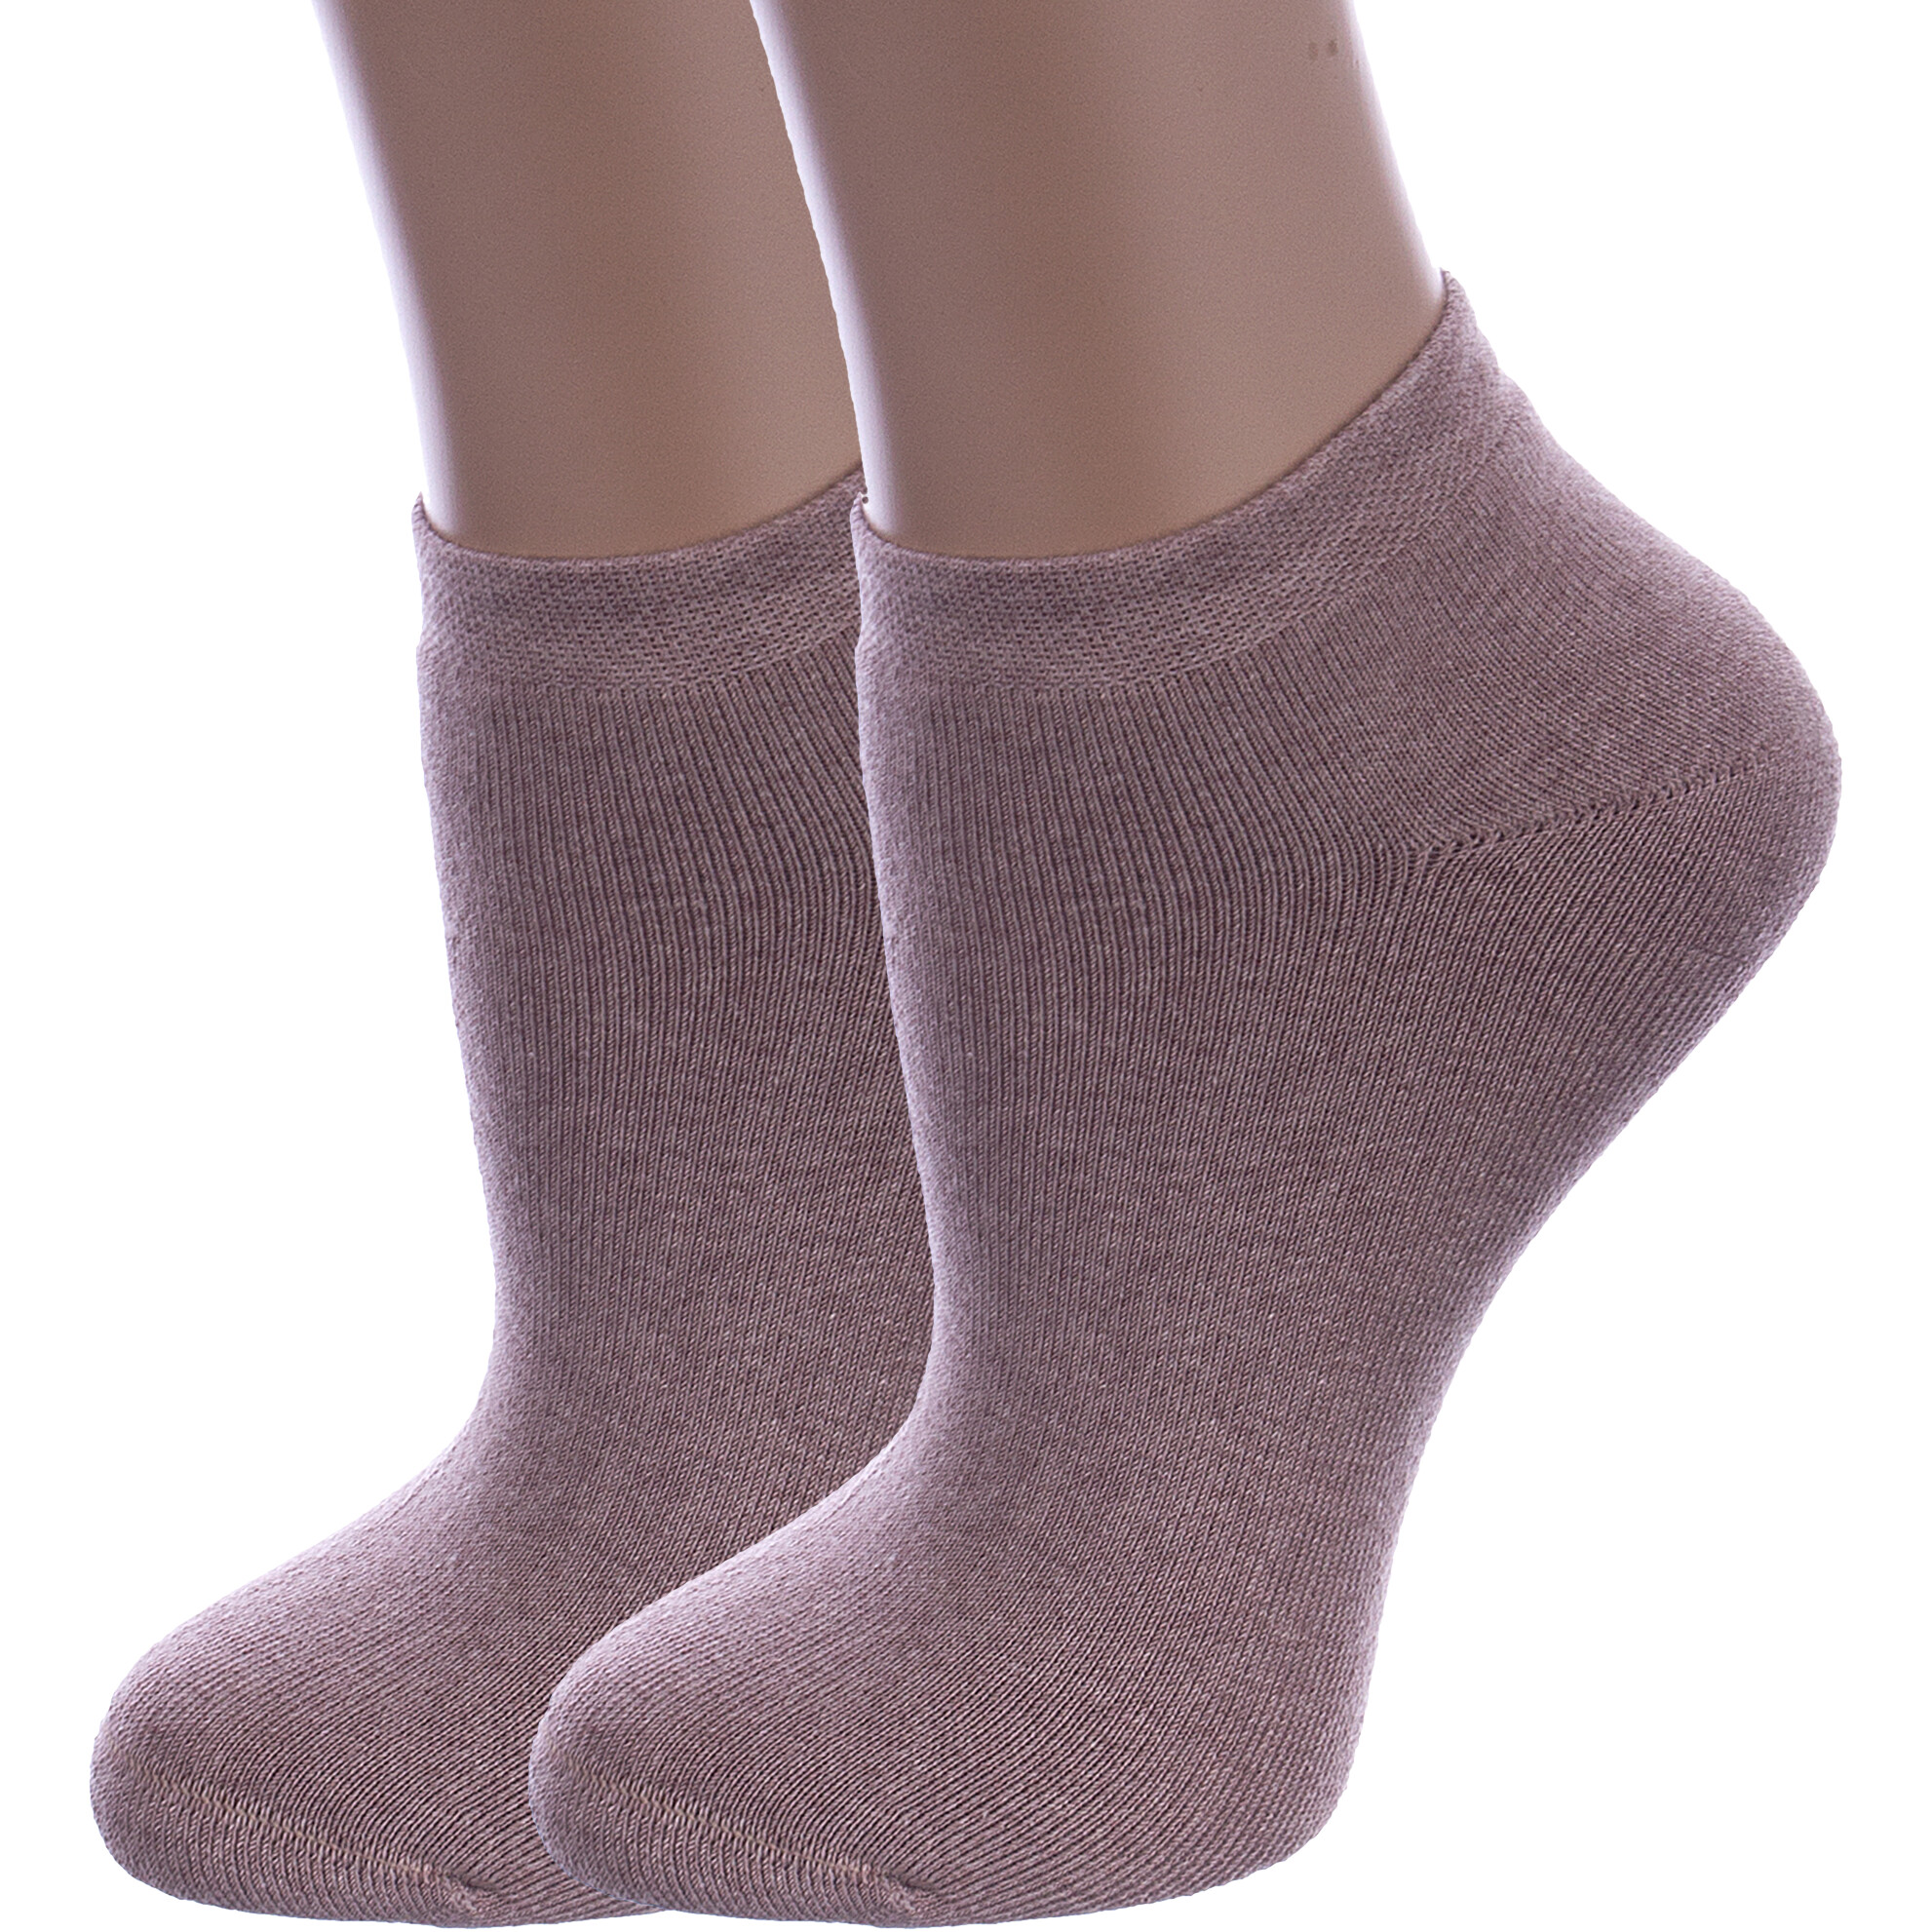 Комплект носков женских Rusocks 2-Ж-2339 бежевых 23-25 2 пары